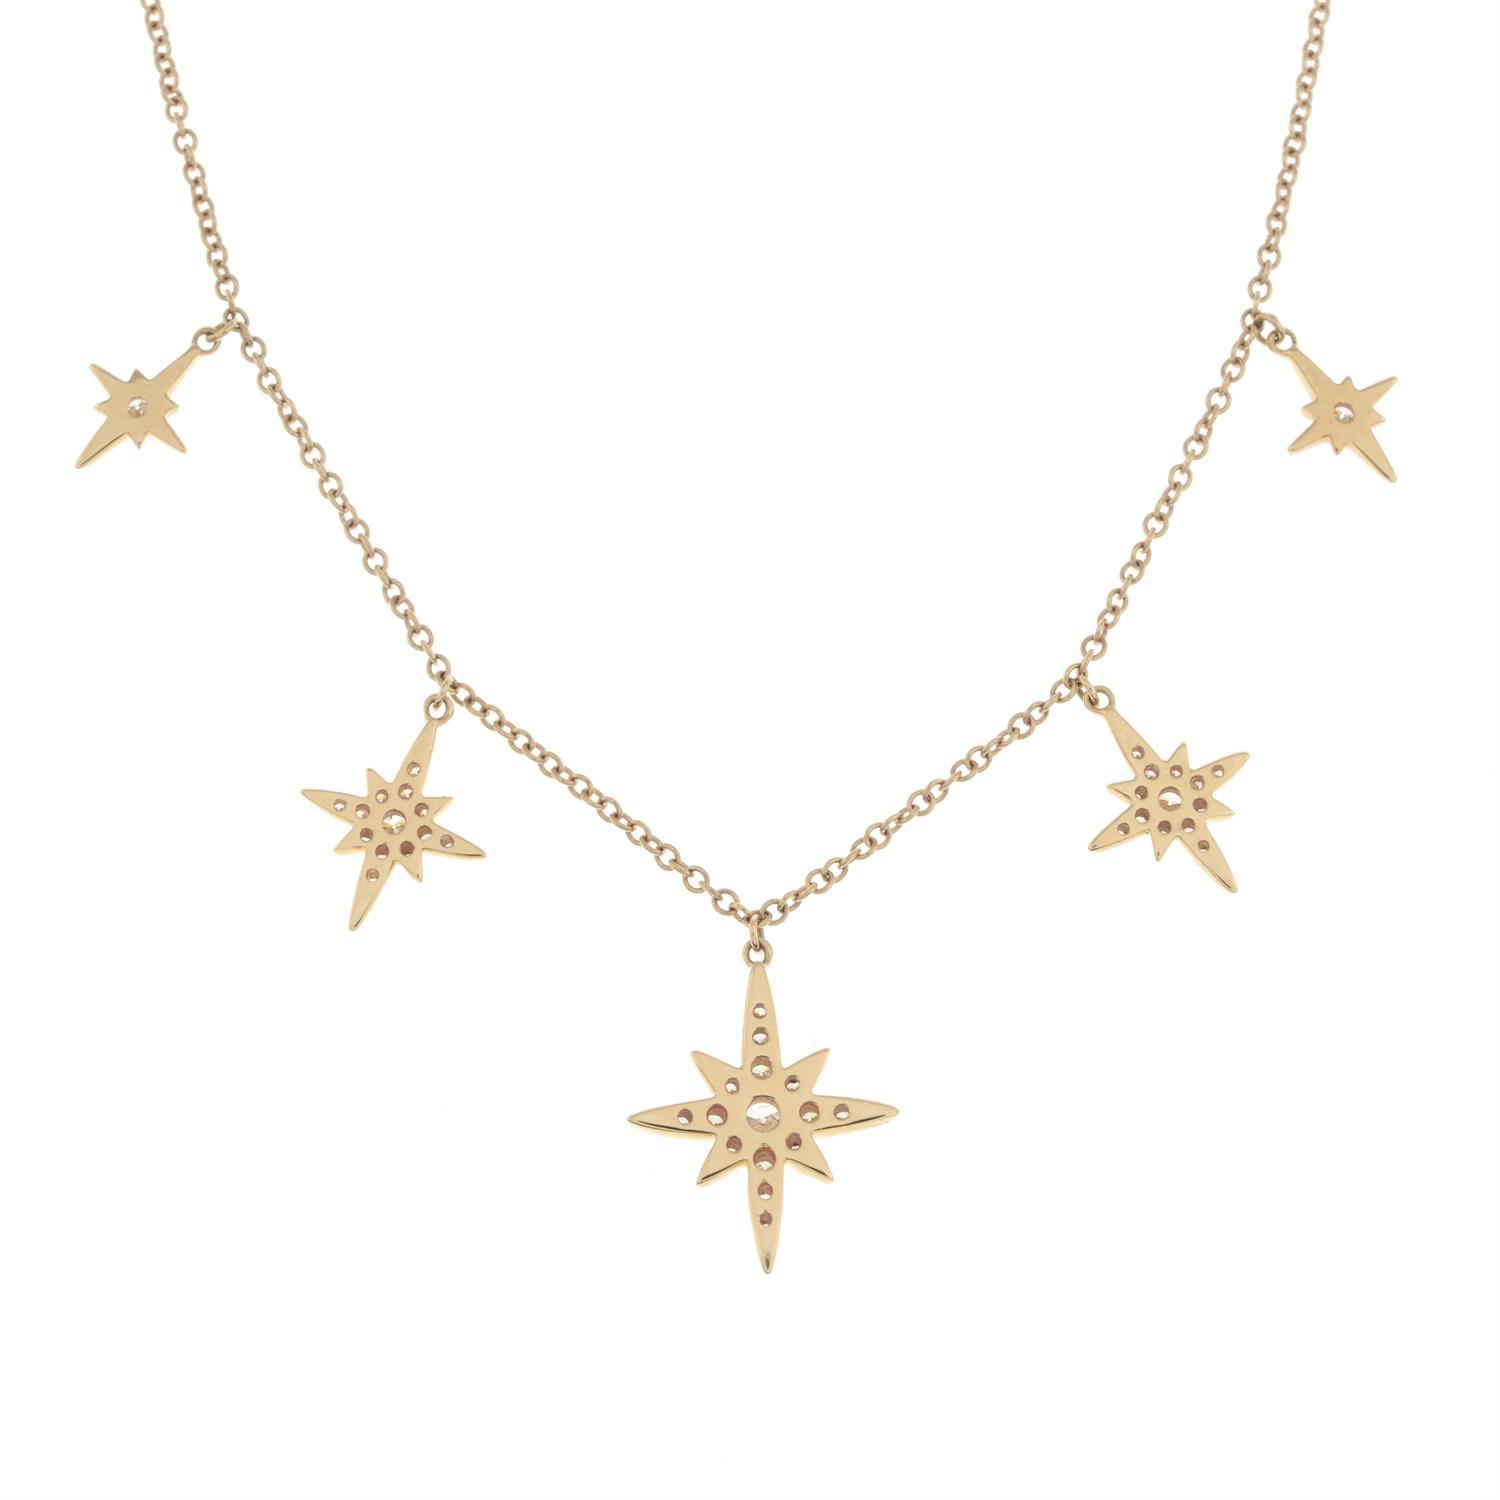 Diamond star fringe necklace - Image 5 of 6